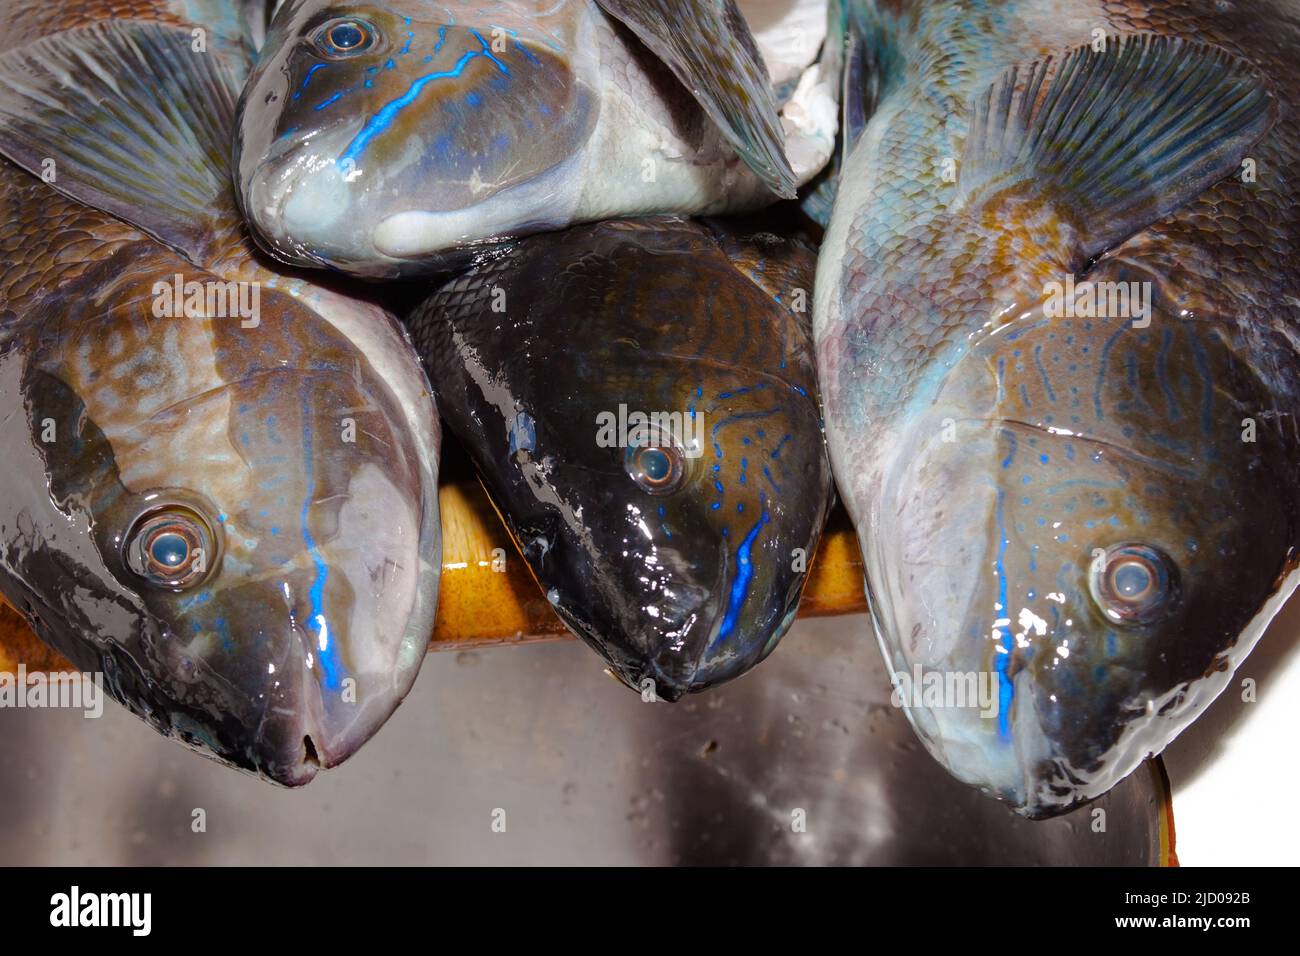 Uno sguardo alla vita in Nuova Zelanda. Pesce farfalla (Odax Pullus) catturato spearfishing: Belle strisce elettriche-blu. Foto Stock